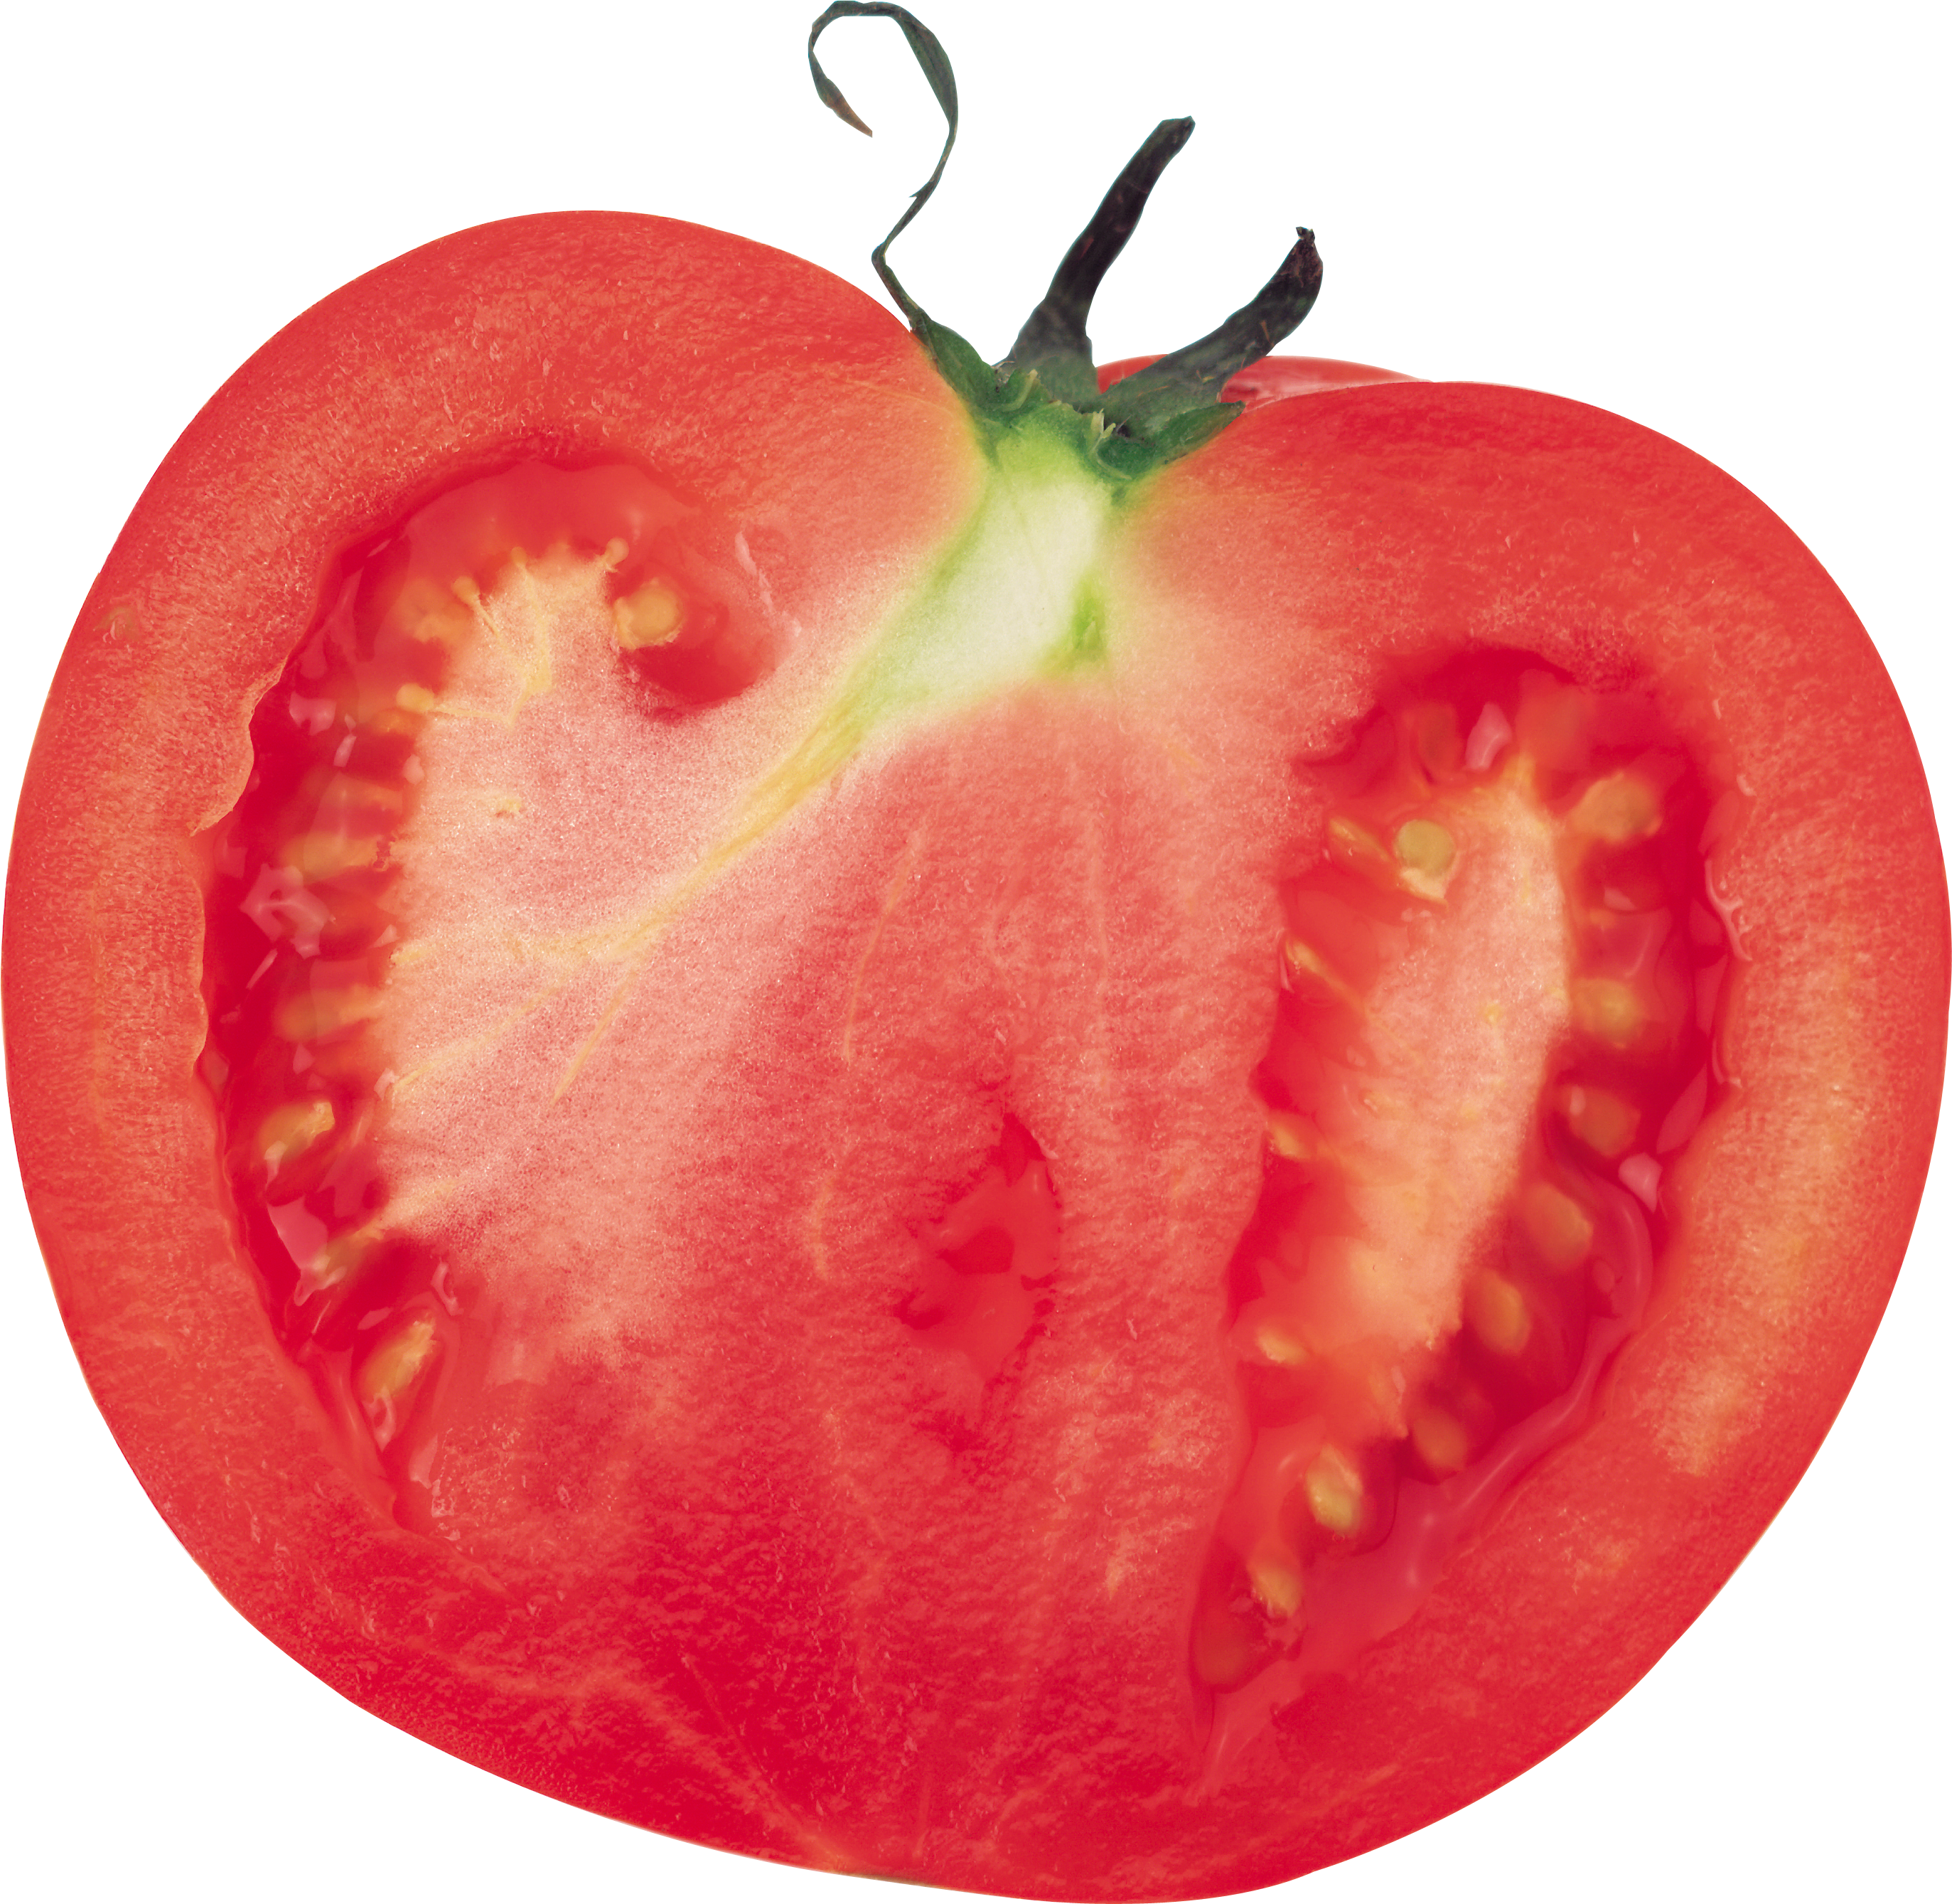 Eine halbe Tomate